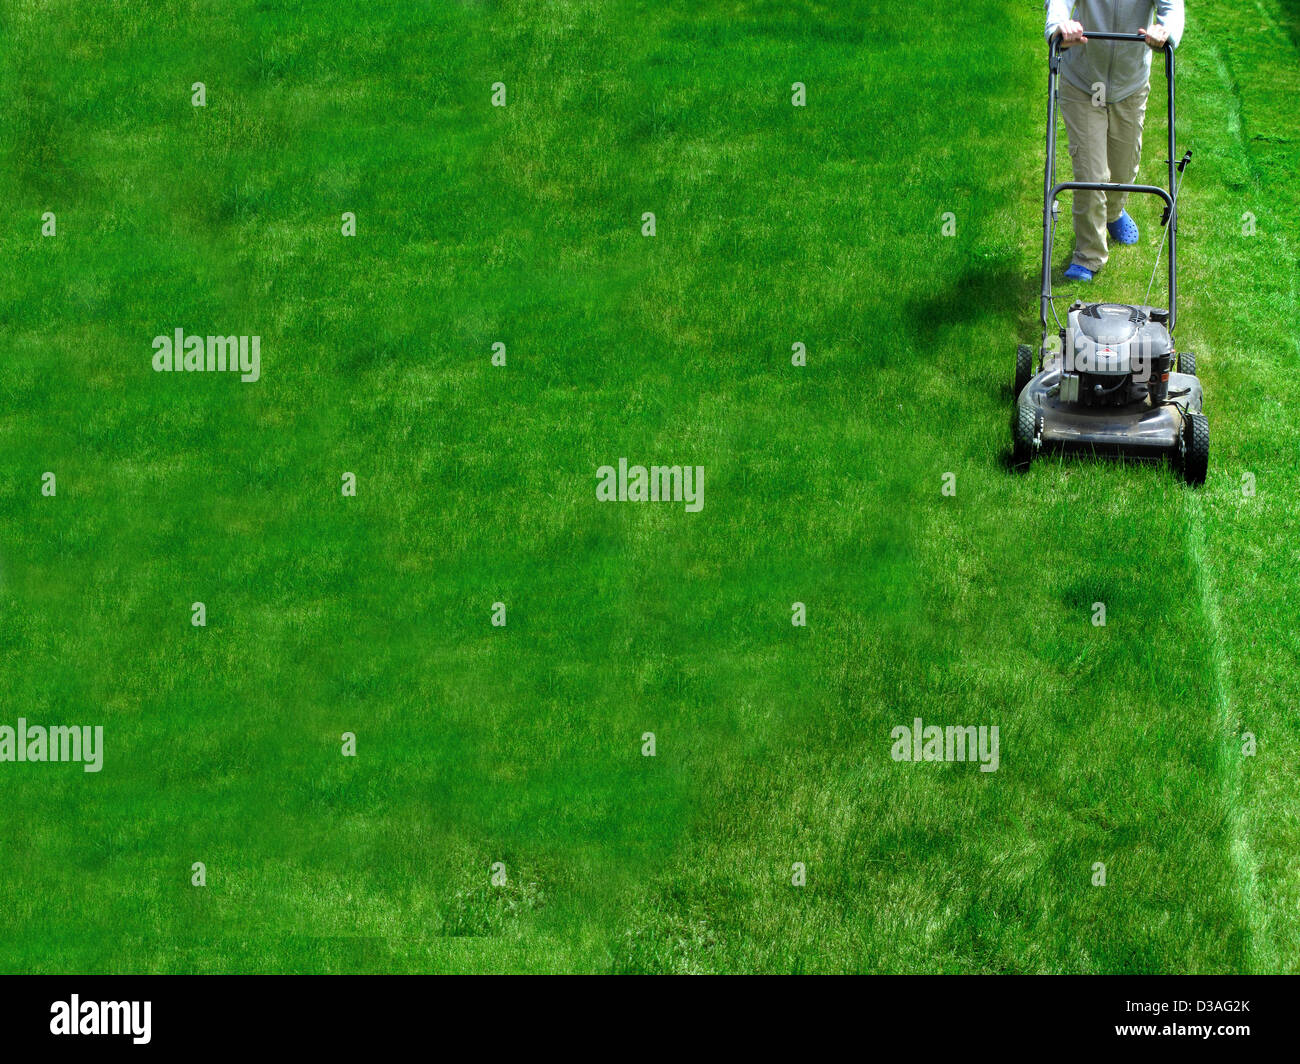 Joven Segar hierba verde con segadora Foto de stock